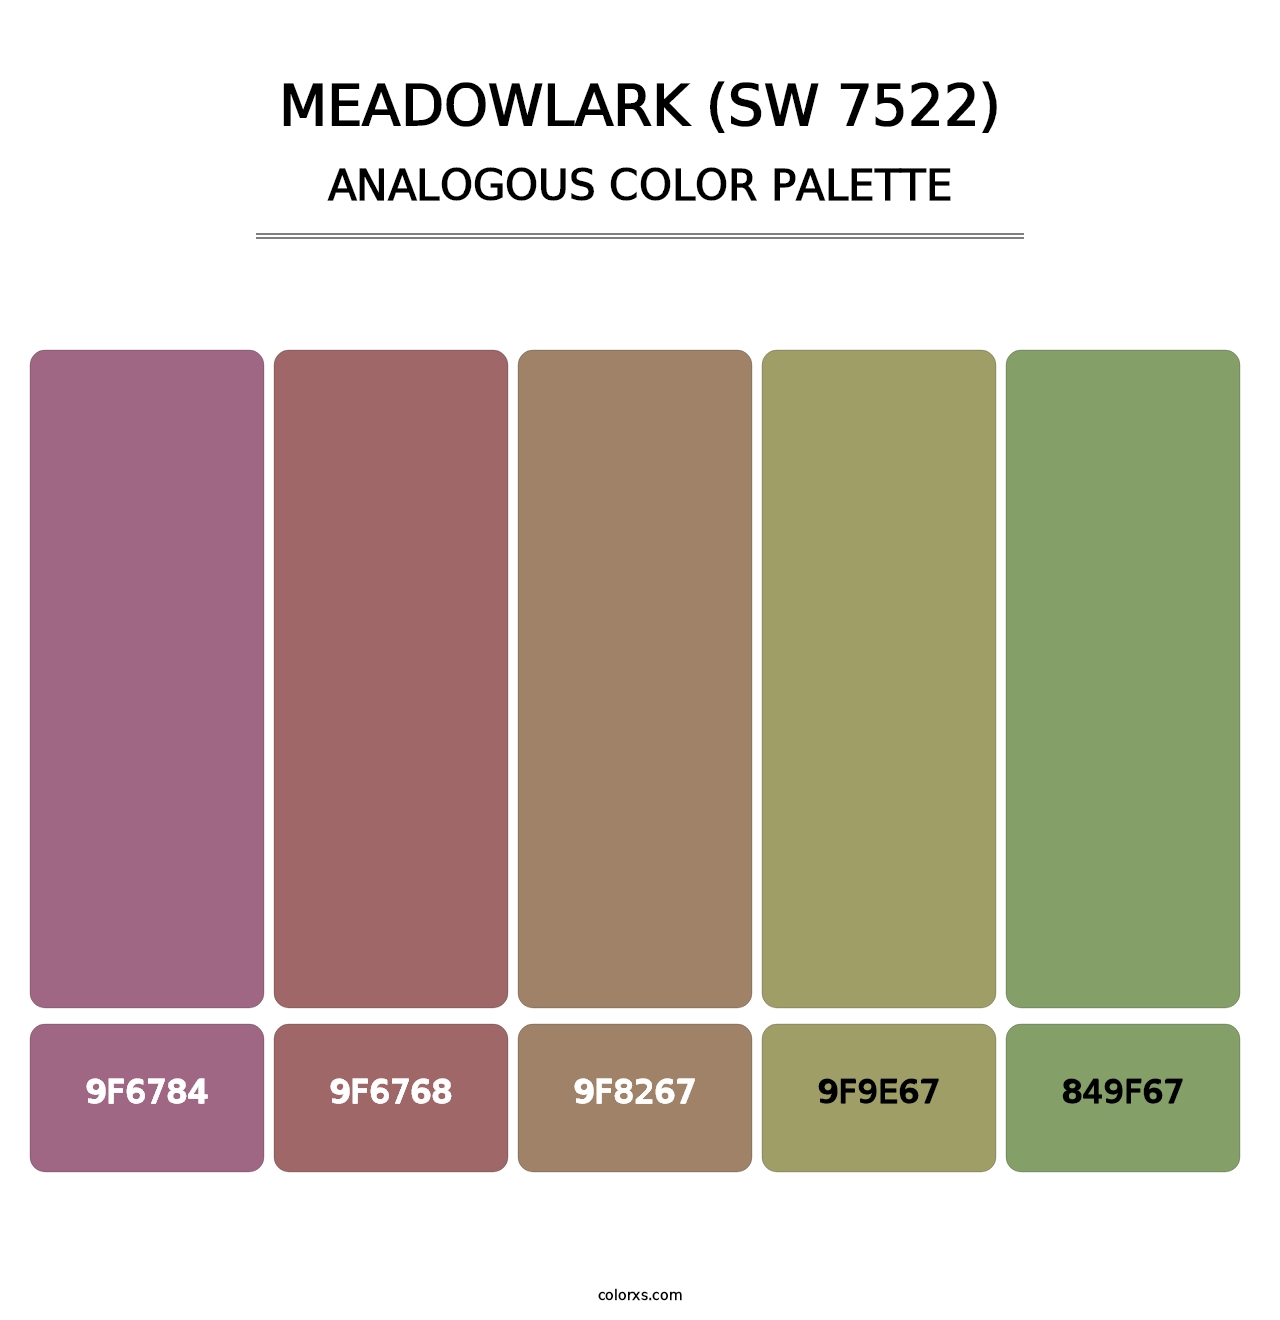 Meadowlark (SW 7522) - Analogous Color Palette